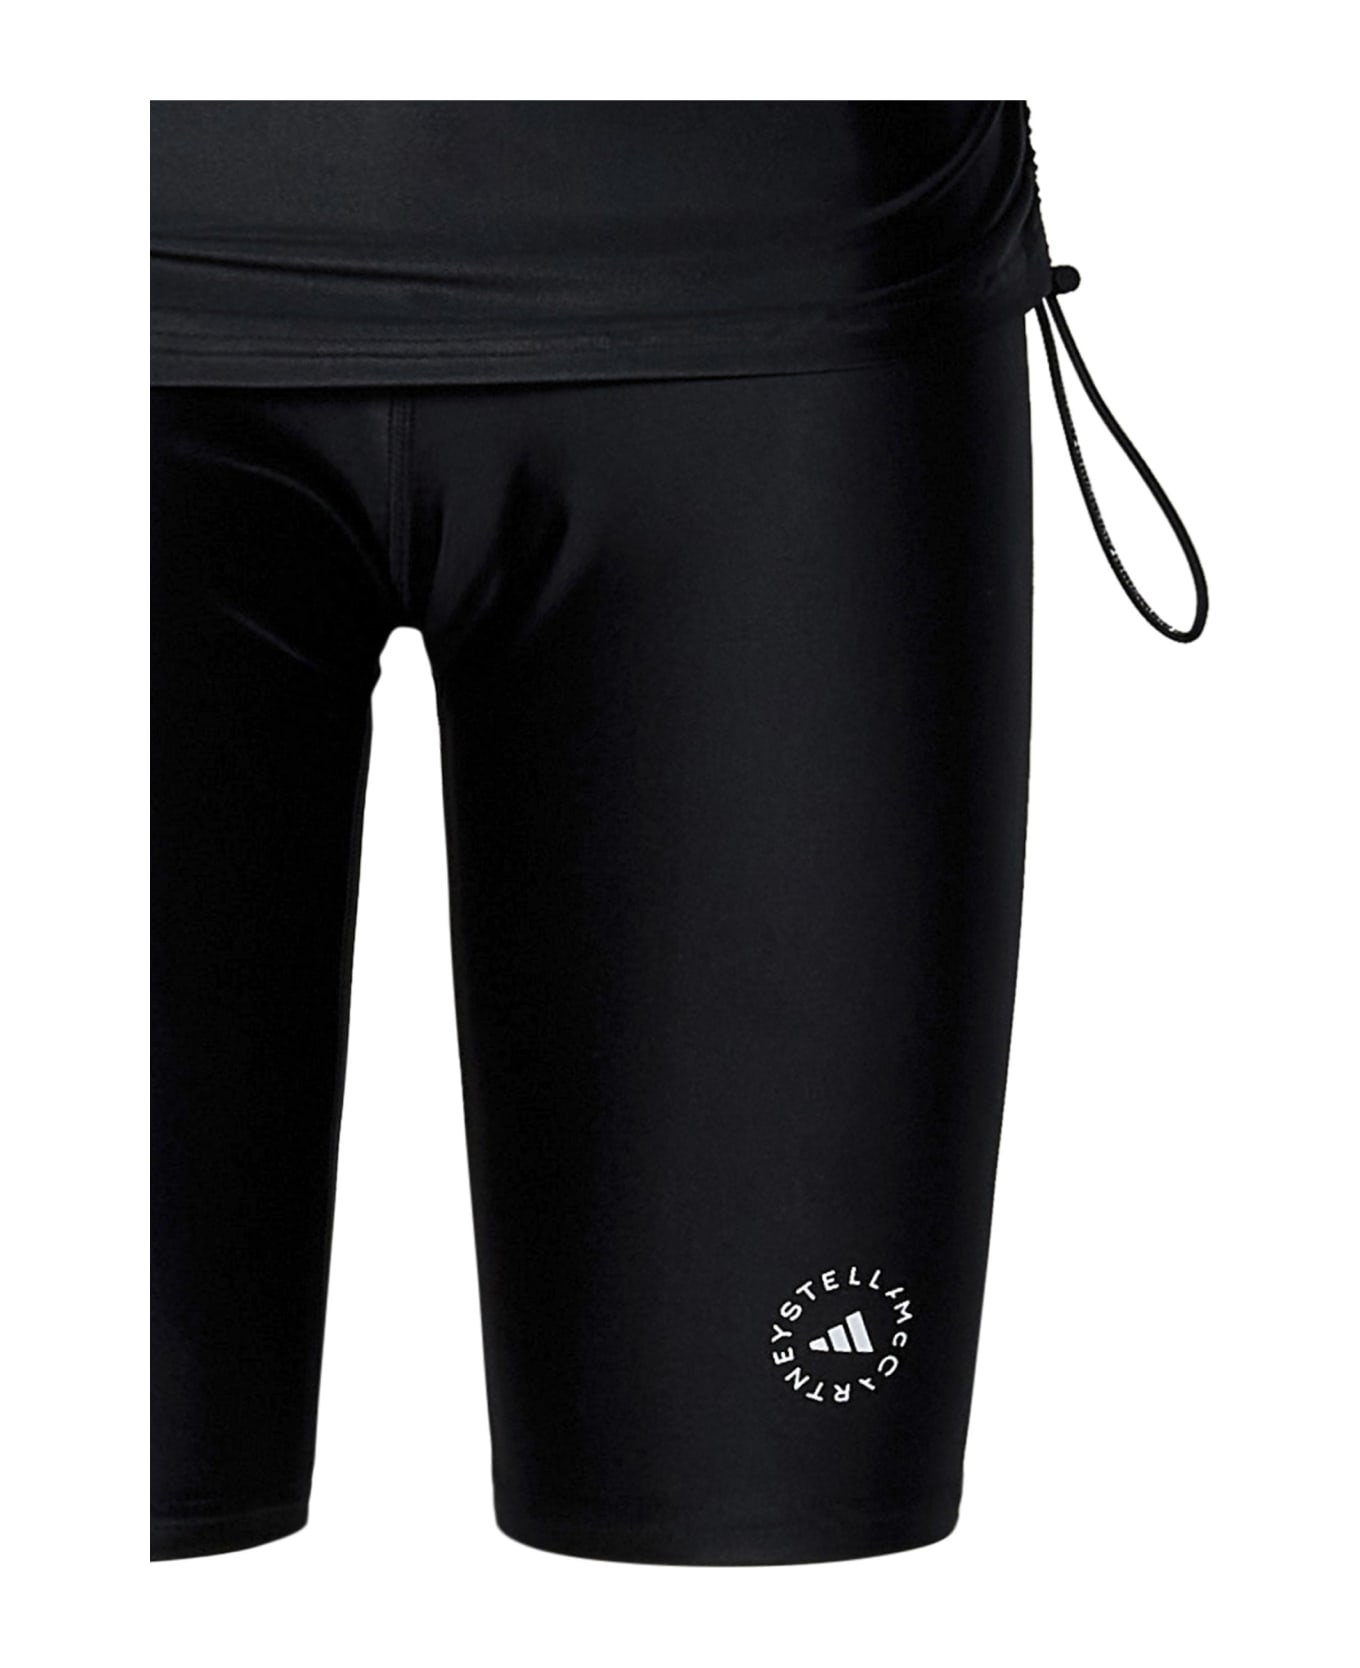 Adidas by Stella McCartney Shorts - Black